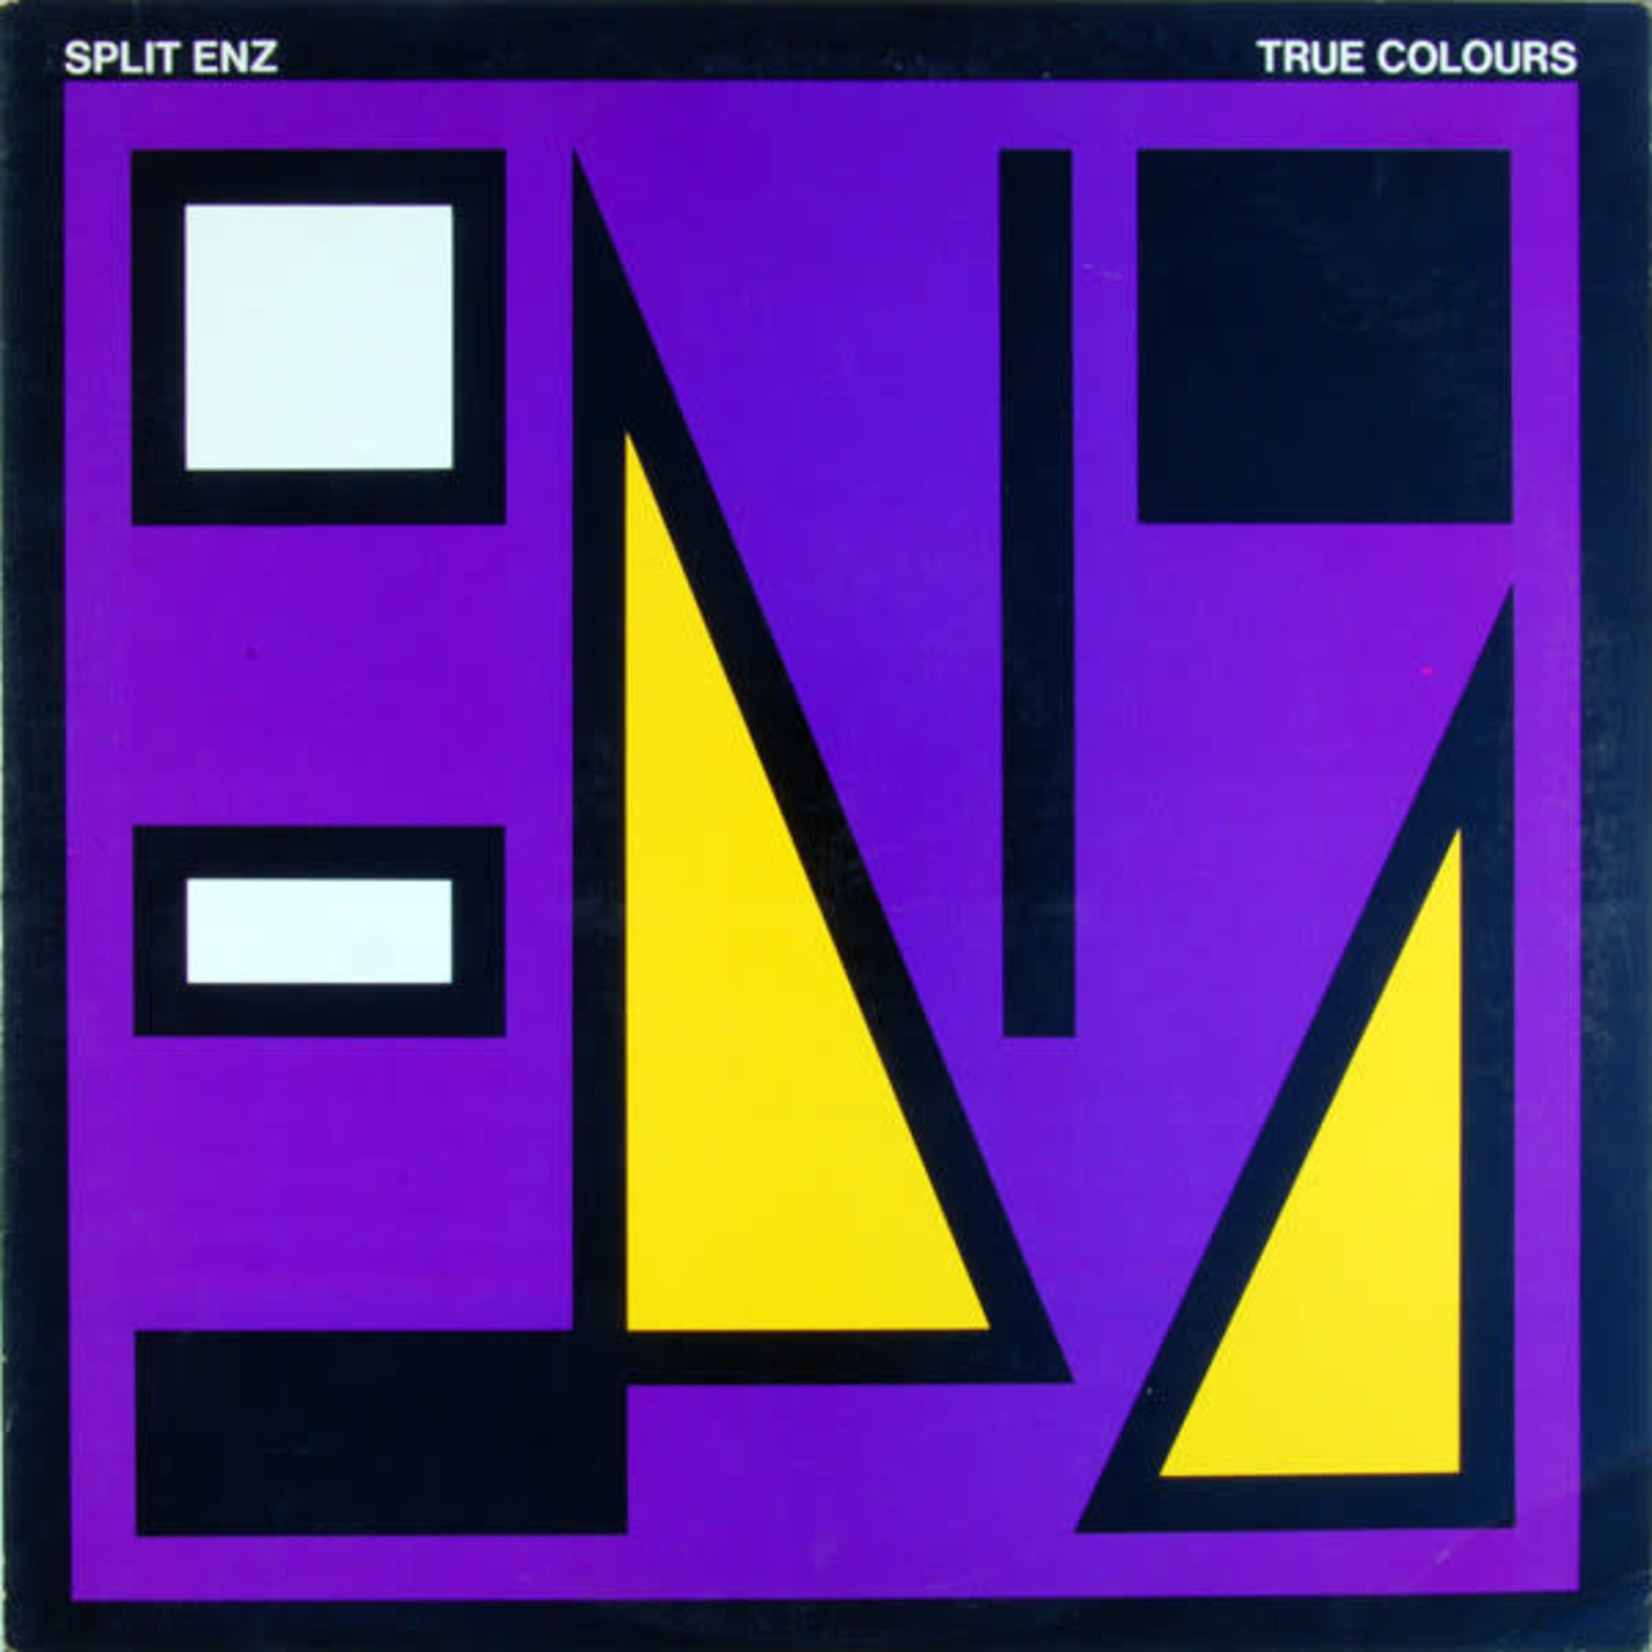 Split Enz Split Enz – True Colours (VG, 1980, LP, Etched, Purple Cover, A&M Records – SP 4822, Canada)